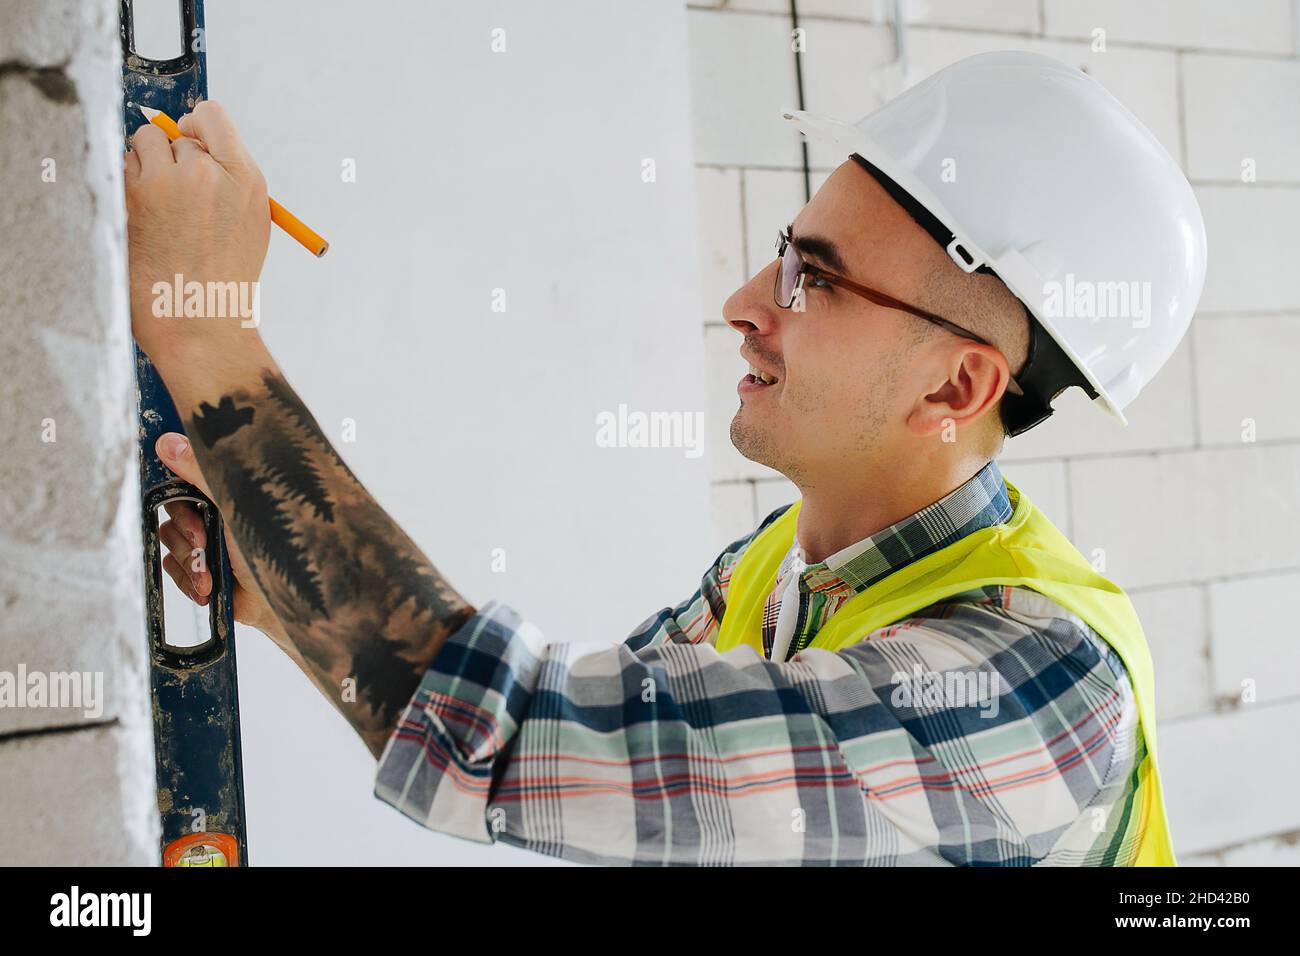 Skrupelloser Bauingenieur in einem weißen Helm, der in einem unfertigen Gebäude Markierungen an einer Ziegelmauer macht. Stockfoto